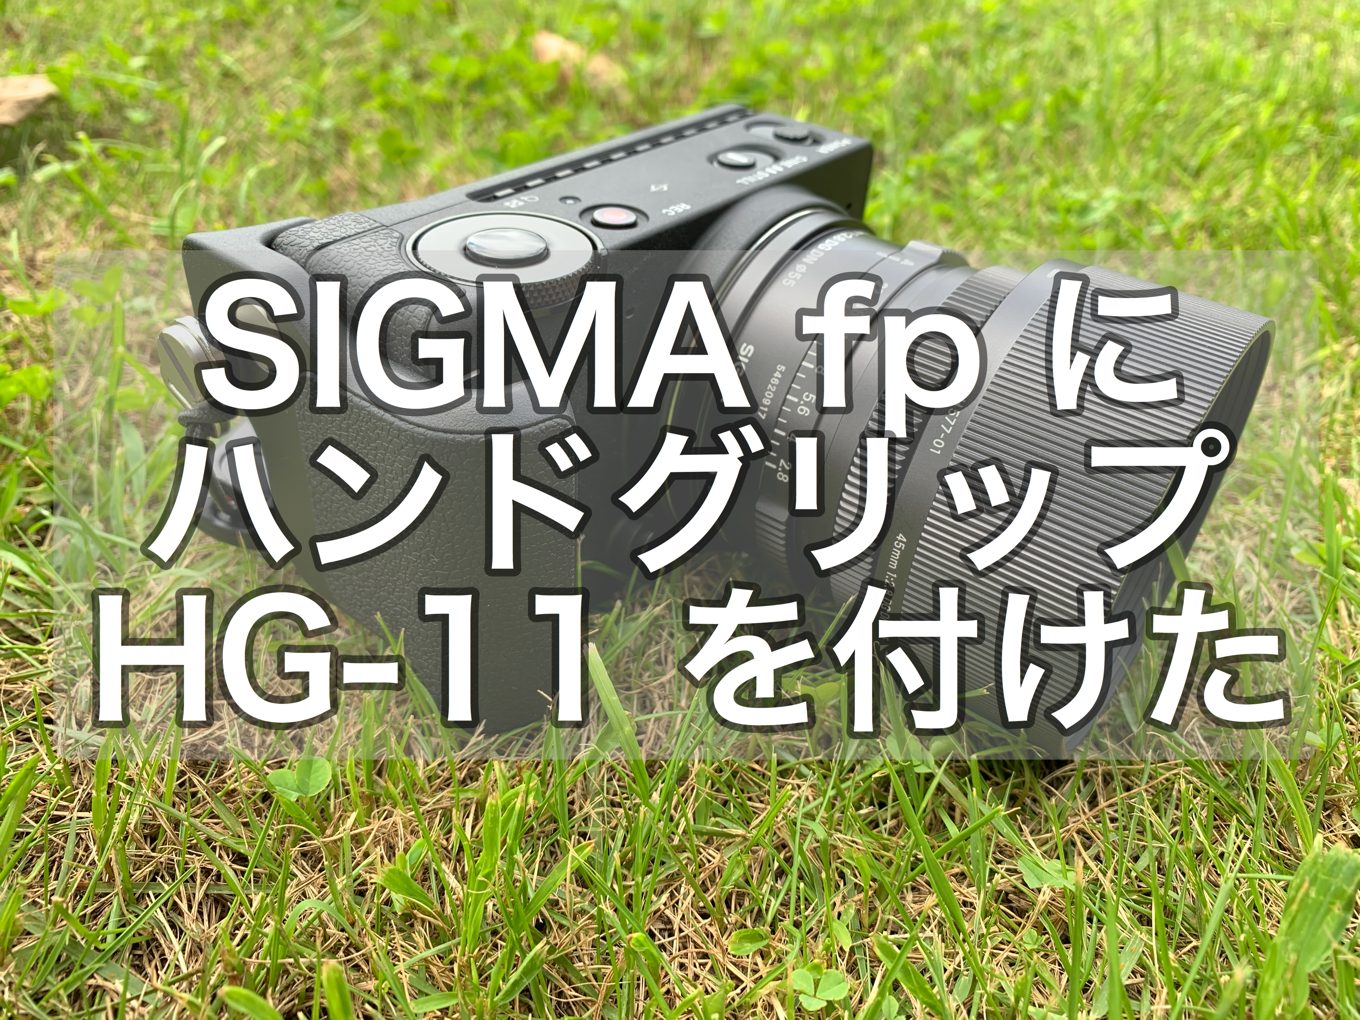 ハンドグリップ HG-11 を付けて SIGMA fp の機動力アップさせました 